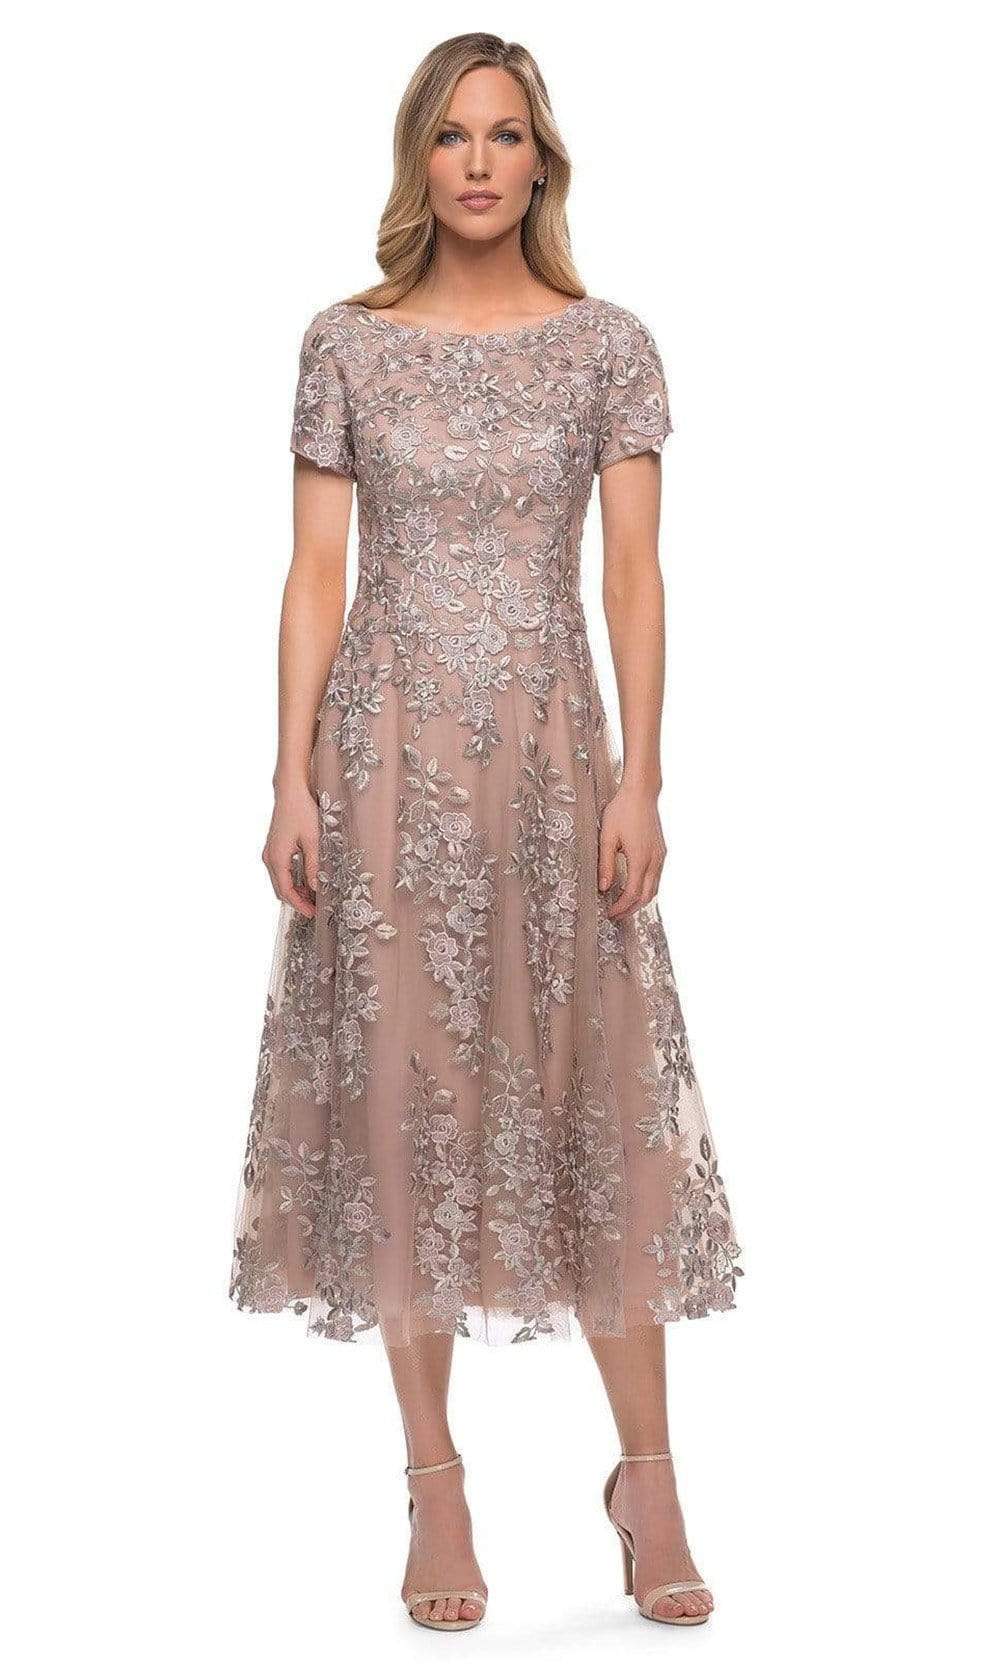 Image of La Femme - 29830 Floral A-line Tea Length Dress